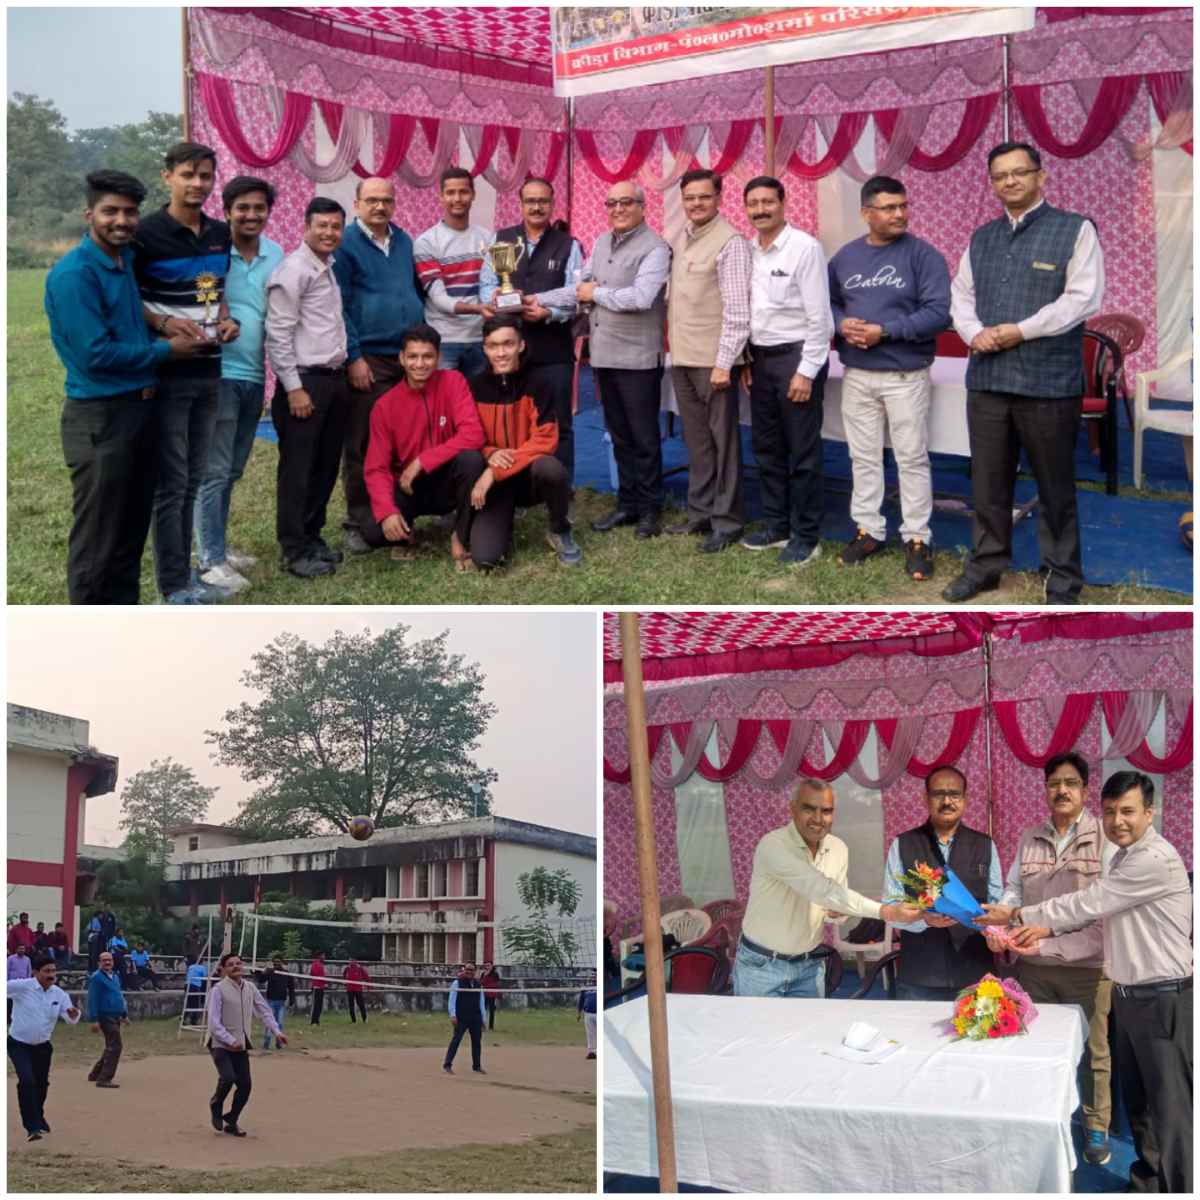 श्री देव सुमन उत्तराखंड विश्वविद्यालय परिसर ऋषिकेश में स्थापना दिवस पर खेल प्रतियोगिताओं का आयोजन